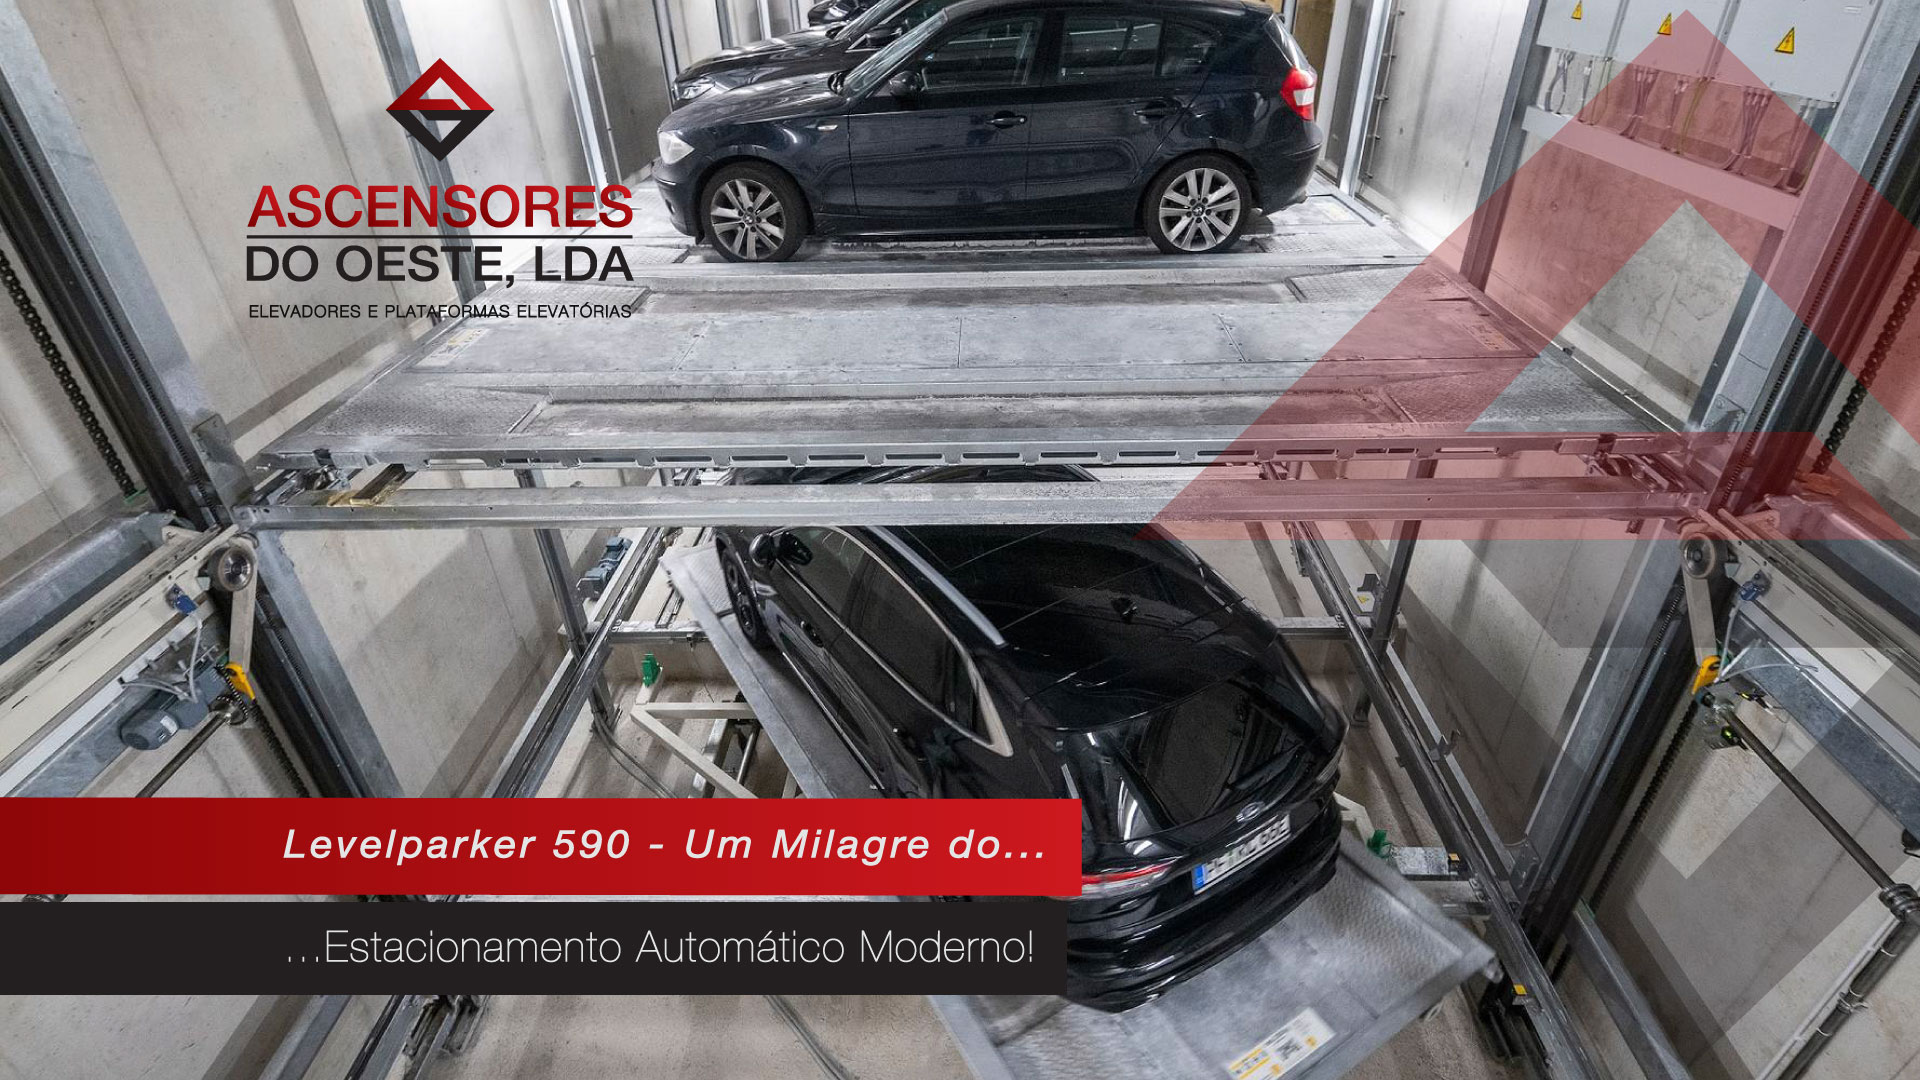 Estacionamento Automático: Levelparker 590 - Ascensores do Oeste